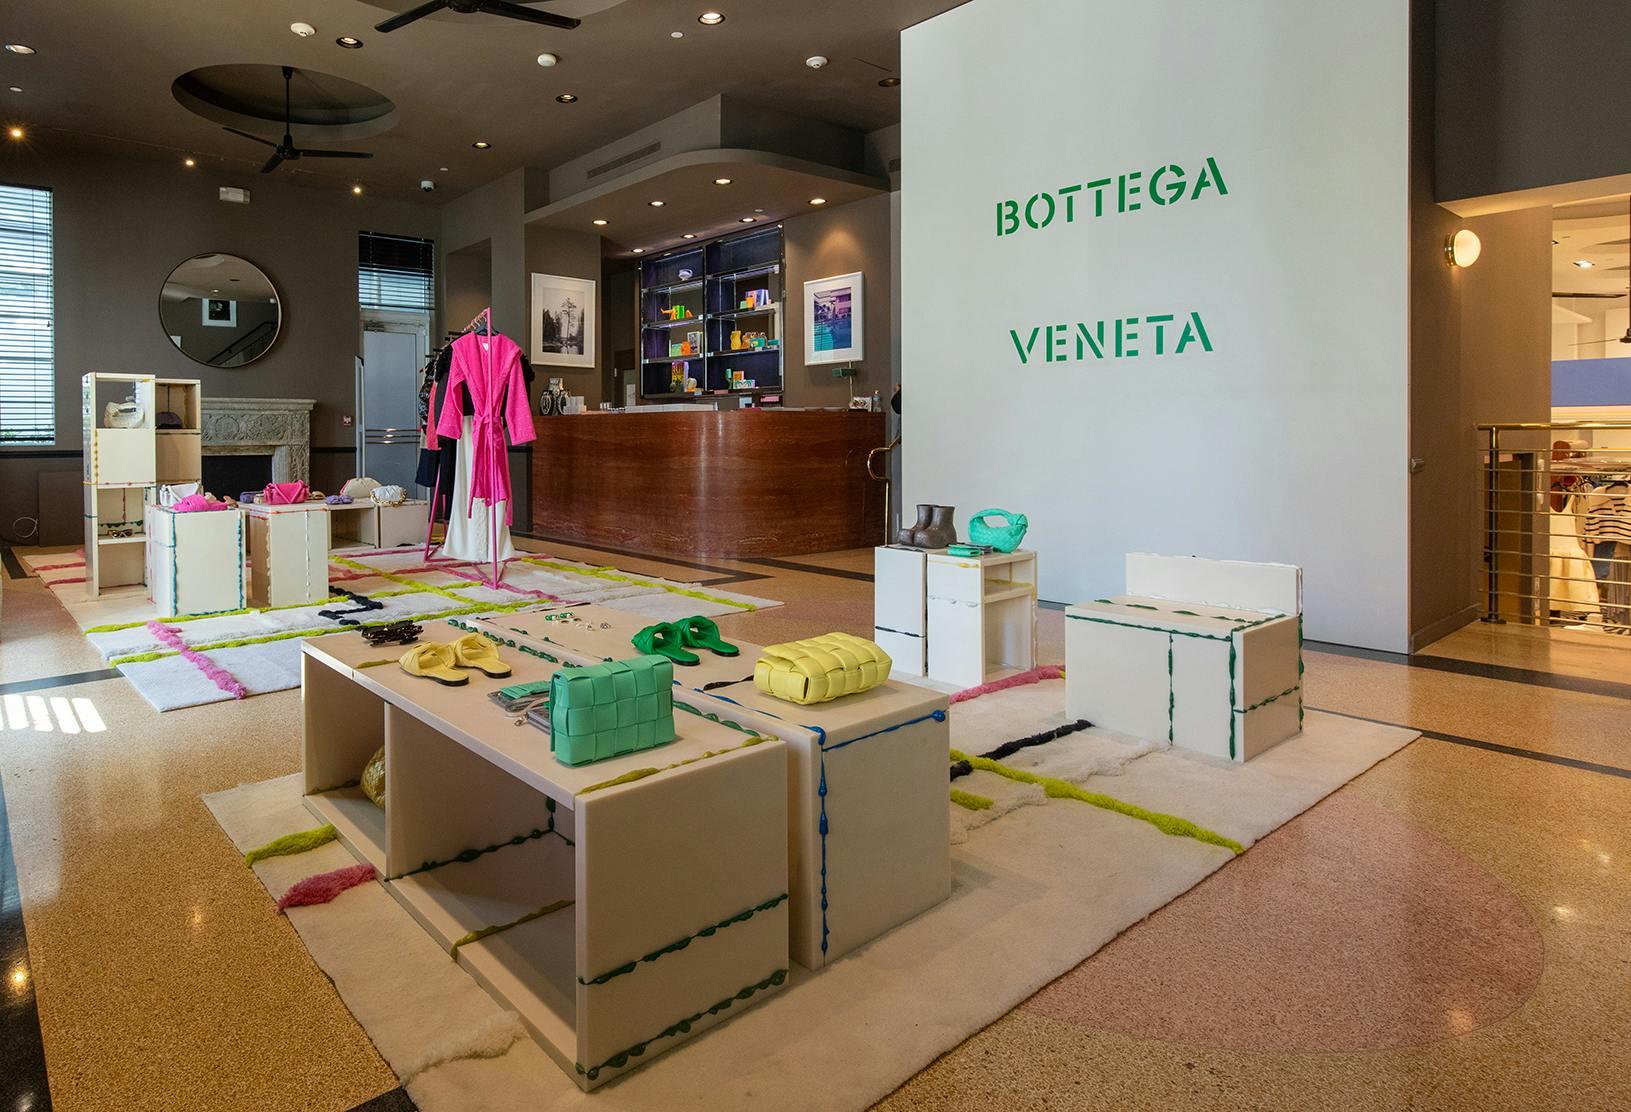 Bottega Veneta during Design Miami 2021